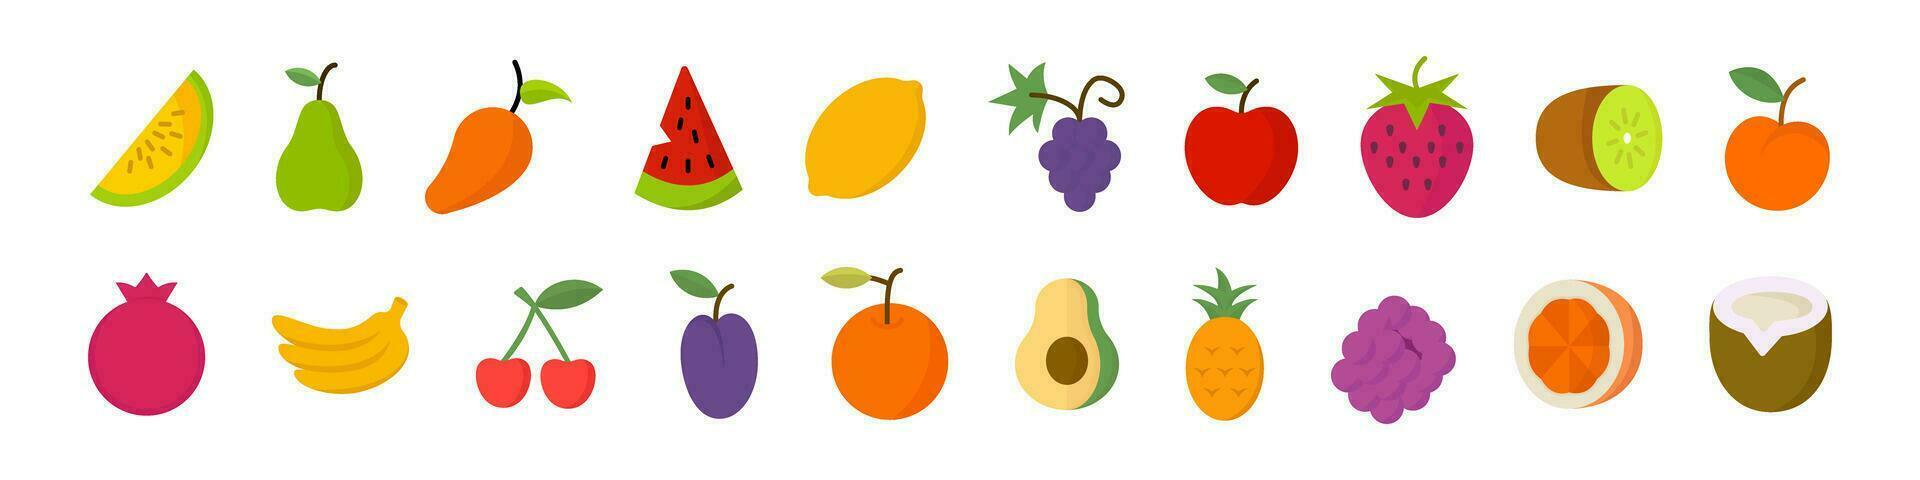 Fruit icon set. Flat style fruit set vector